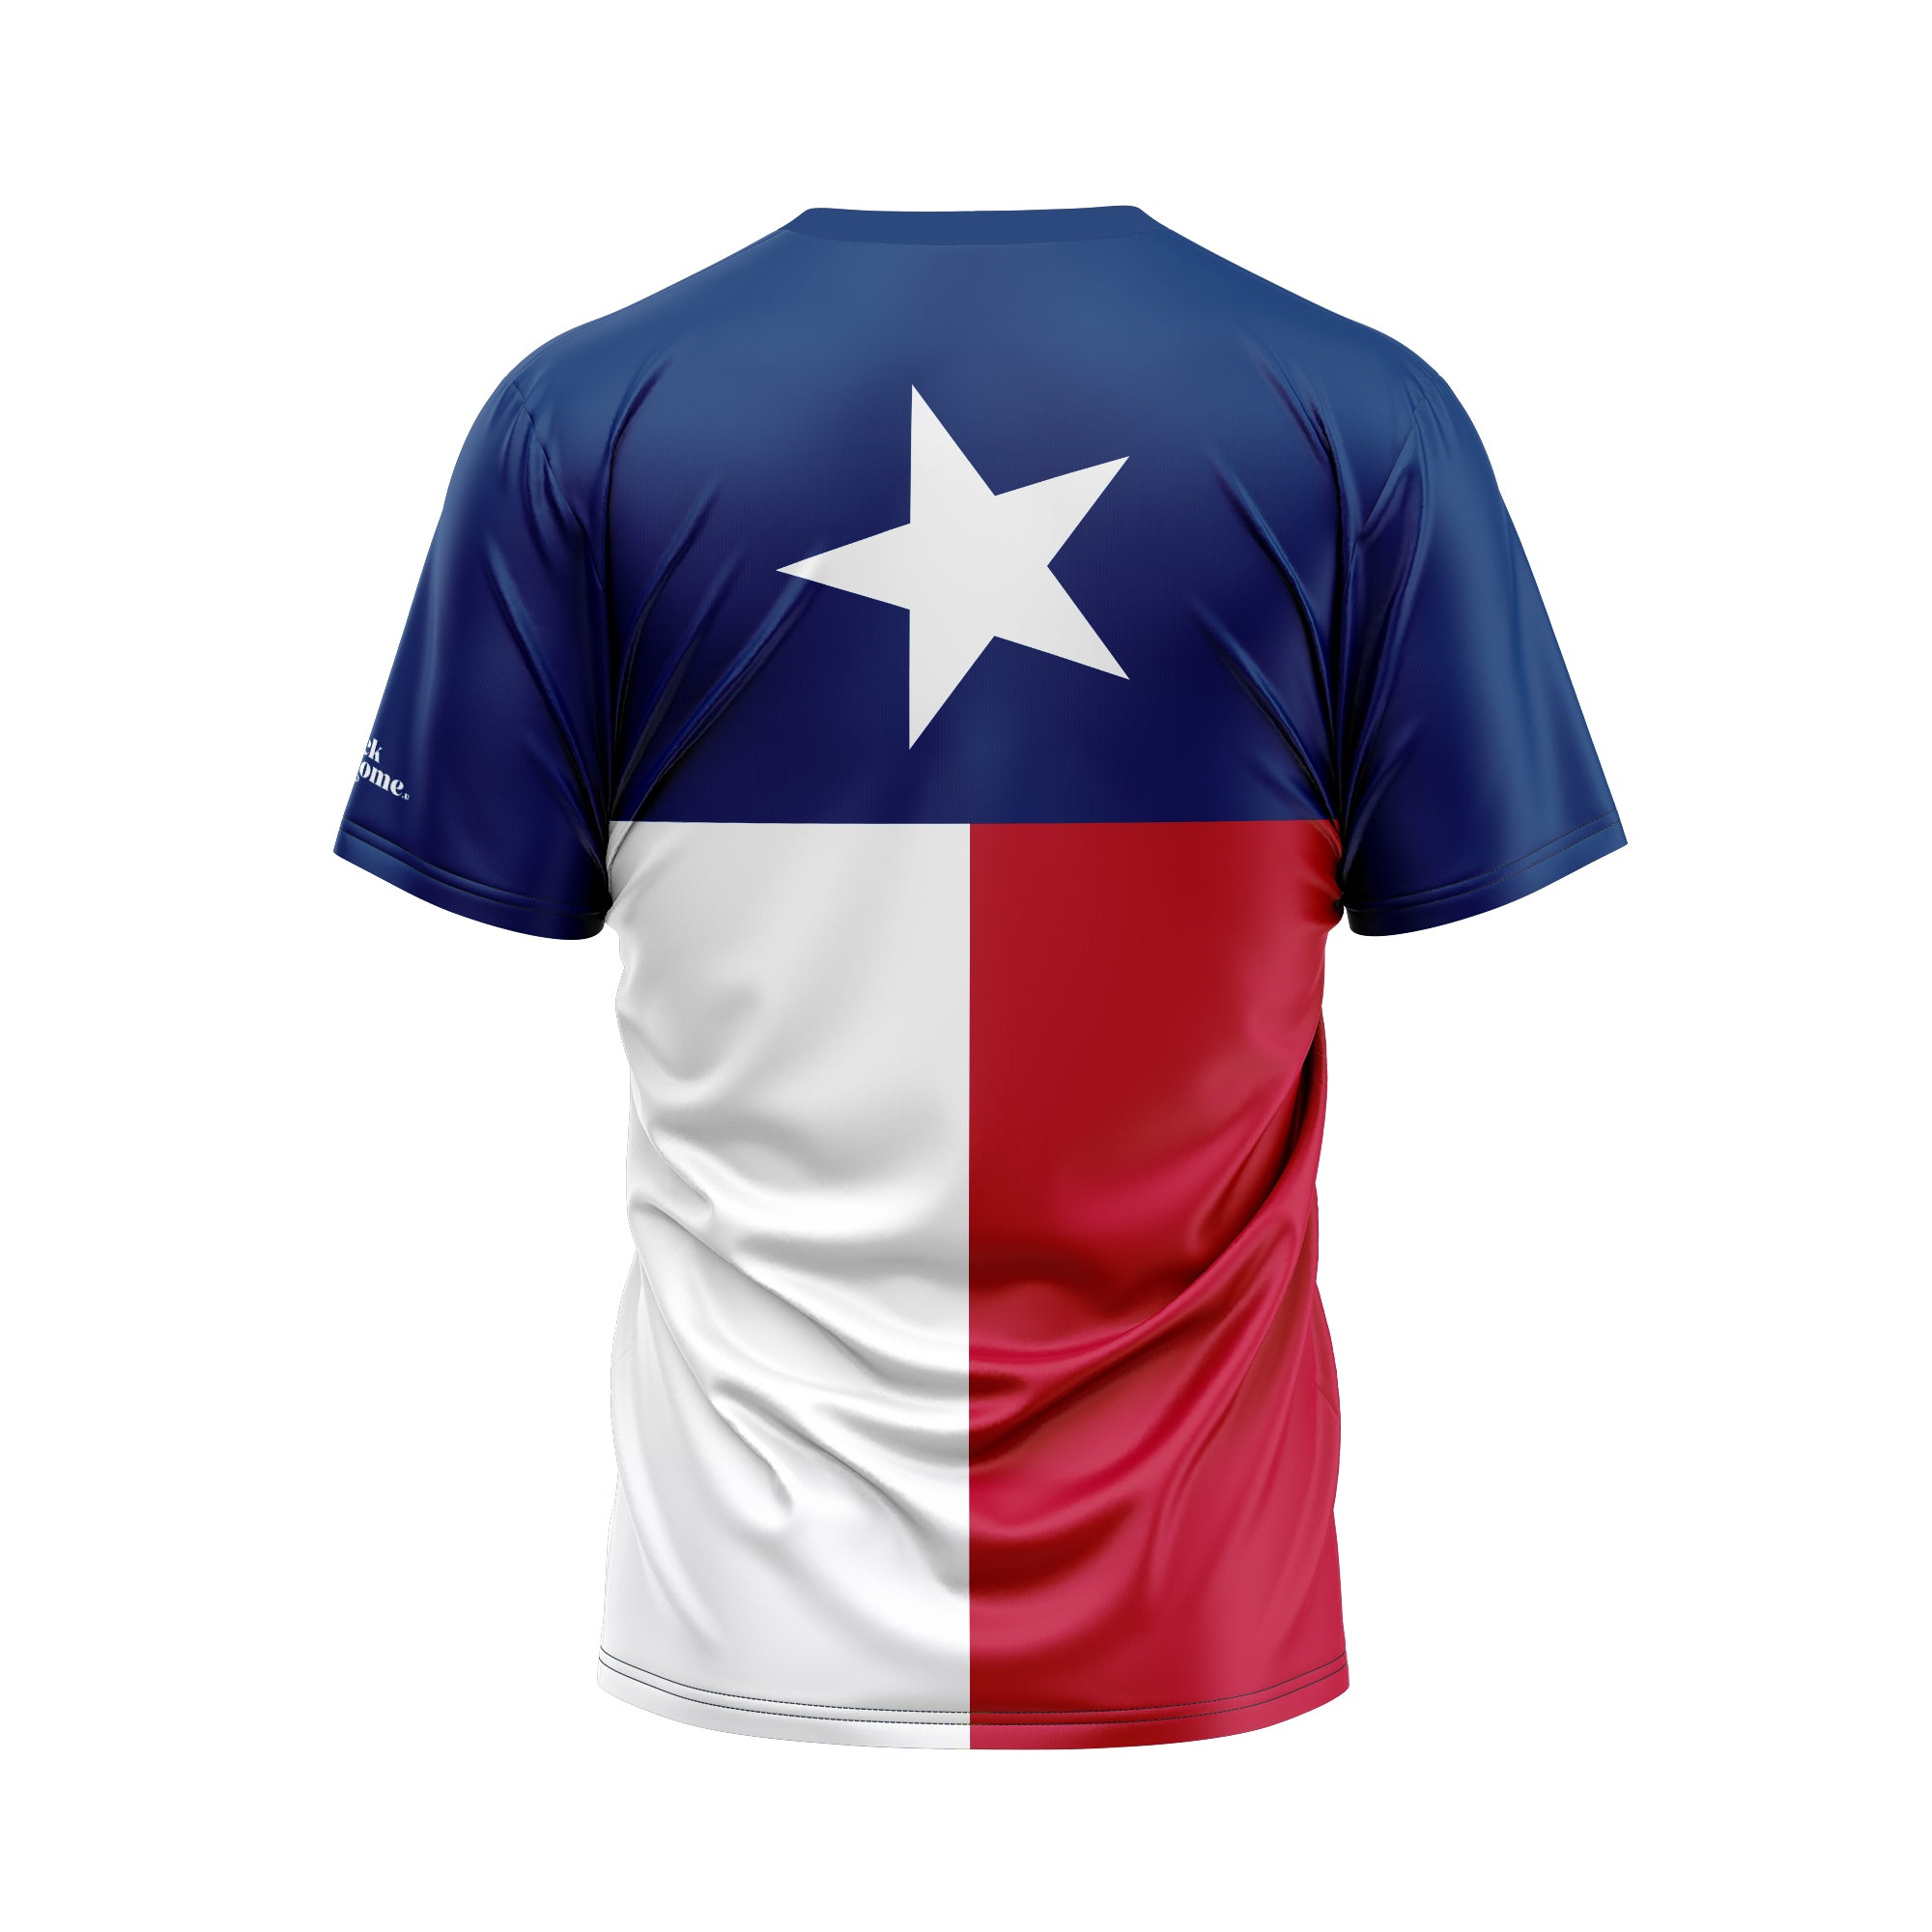 Texas T-Shirts, Texas Flag Shirts